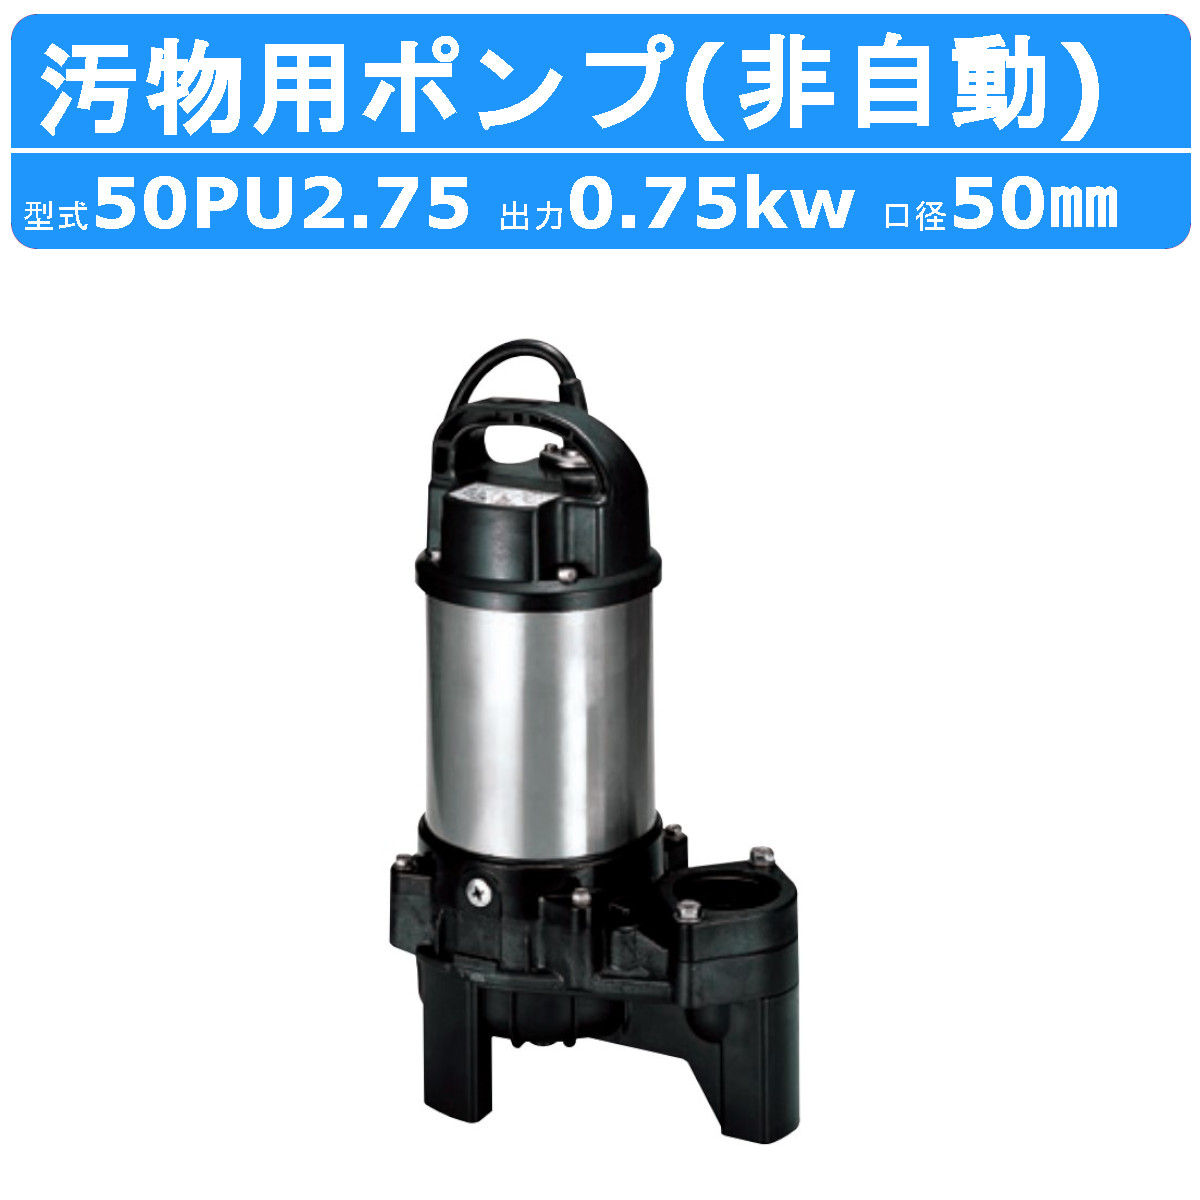 ツルミ 汚物用 水中ポンプ 50PU2.75 バンクスシリーズ 浄化槽用 三相